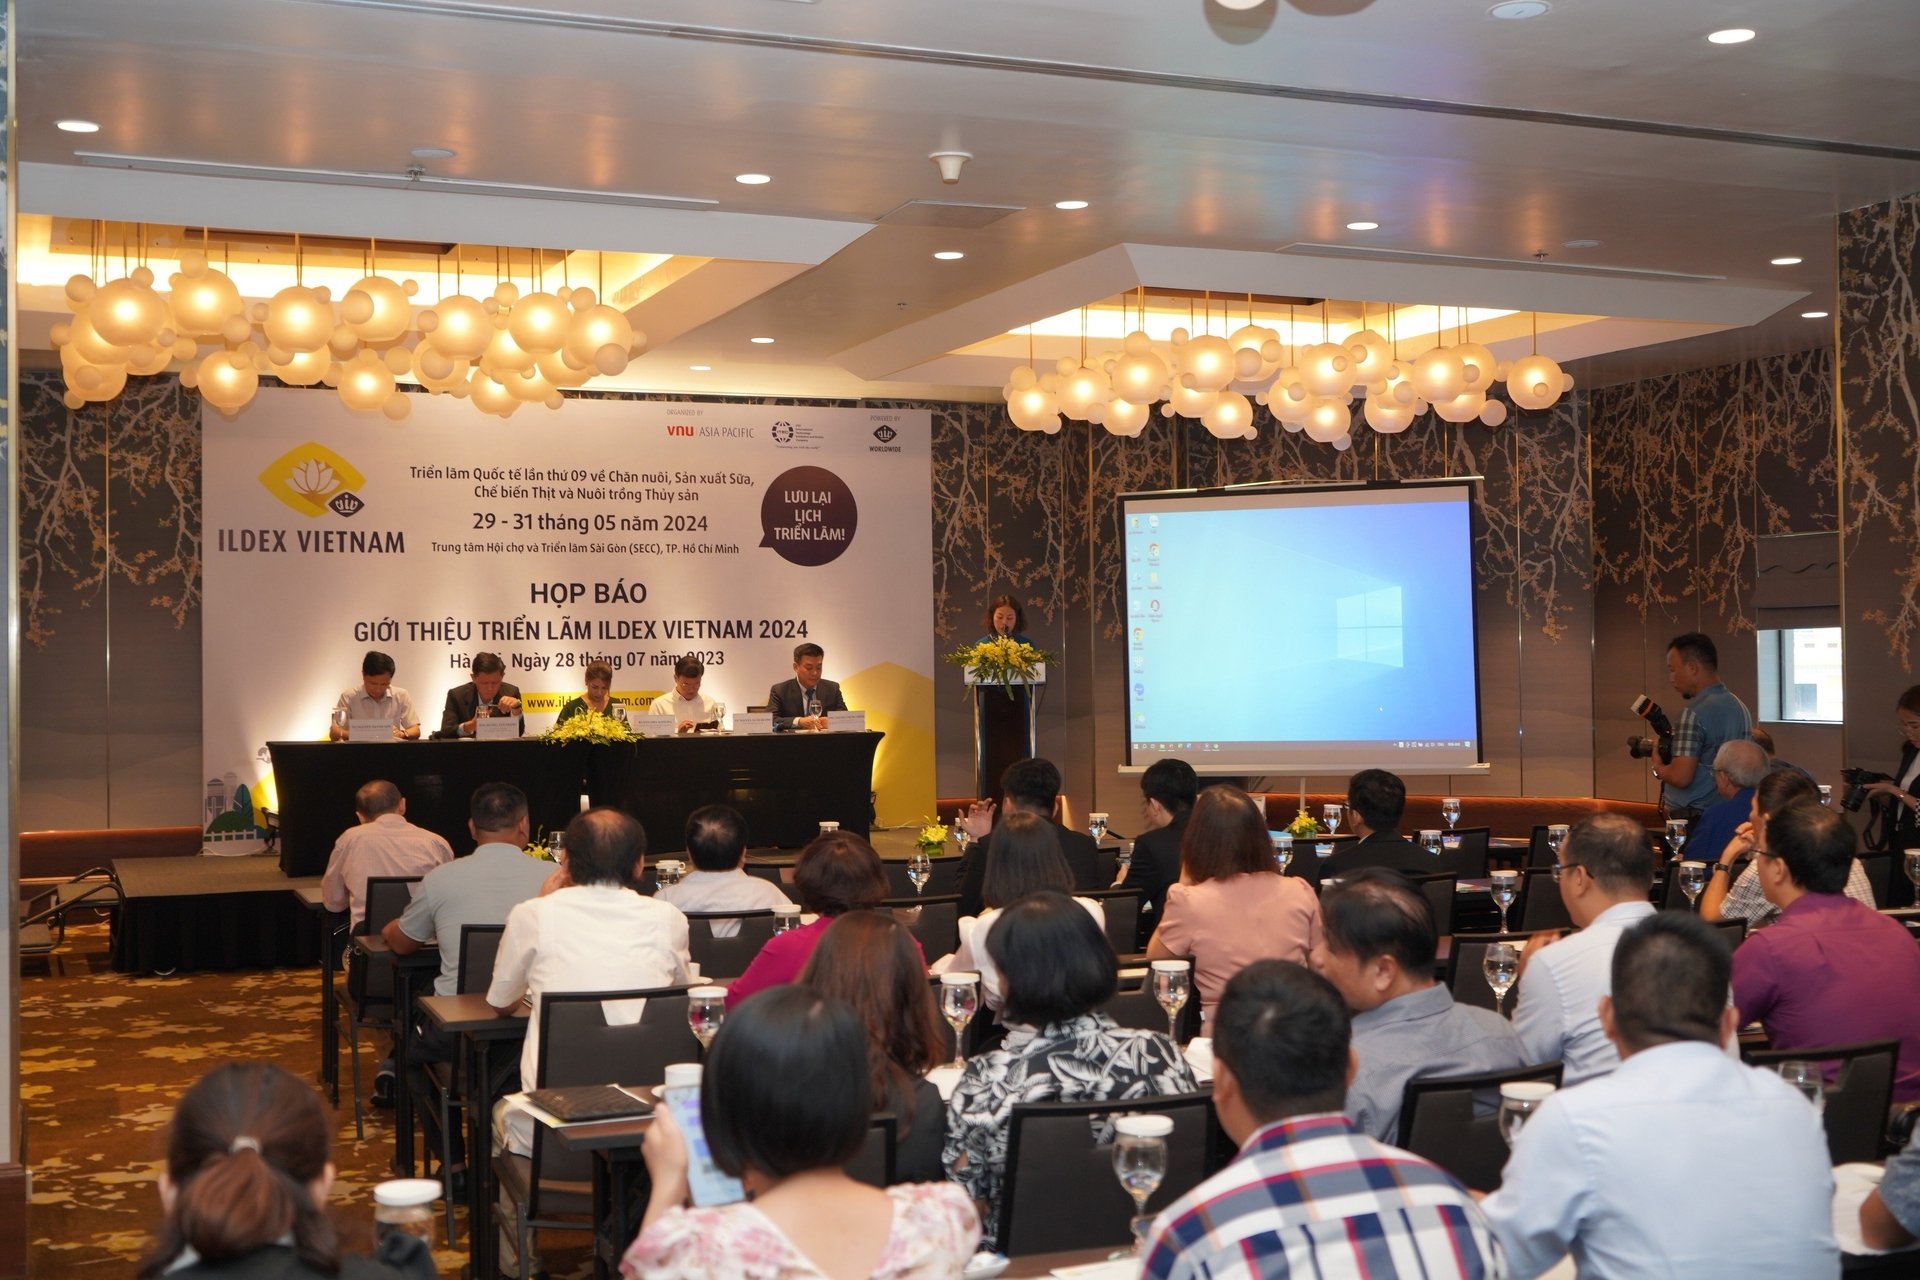 Buổi họp báo giới thiệu Triển lãm ILDEX Việt Nam 2024 diễn ra sáng 28/7 tại Hà Nội. Ảnh: HT.